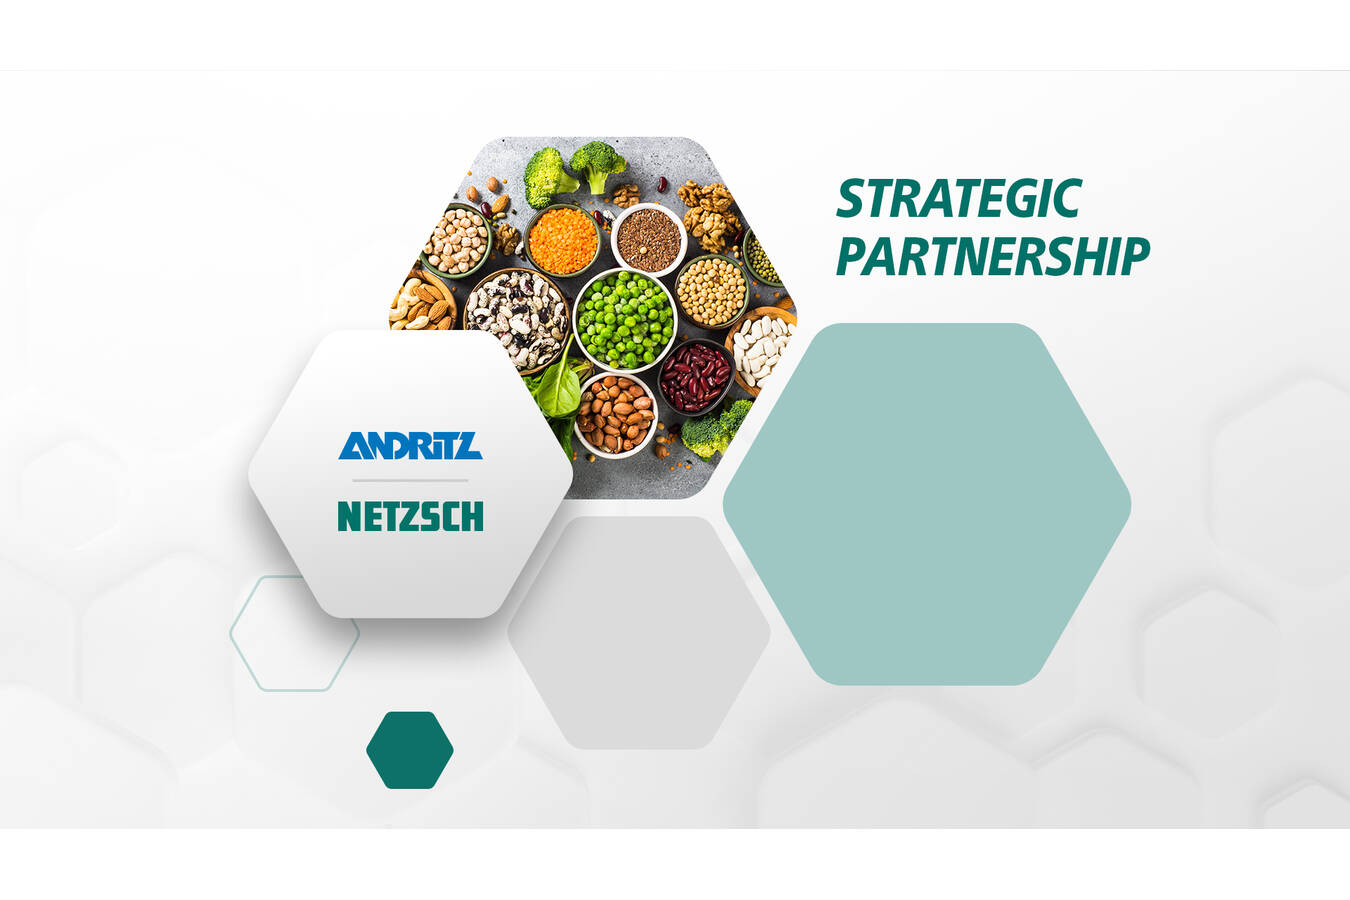 ANDRITZ schließt Partnerschaft mit NETZSCH-Feinmahltechnik GmbH Strategische Partnerschaft zur Zusammenarbeit bei der Bedienung des Marktes für alternative Proteine mit zukunftsorientierten Technologien und Verfahren.